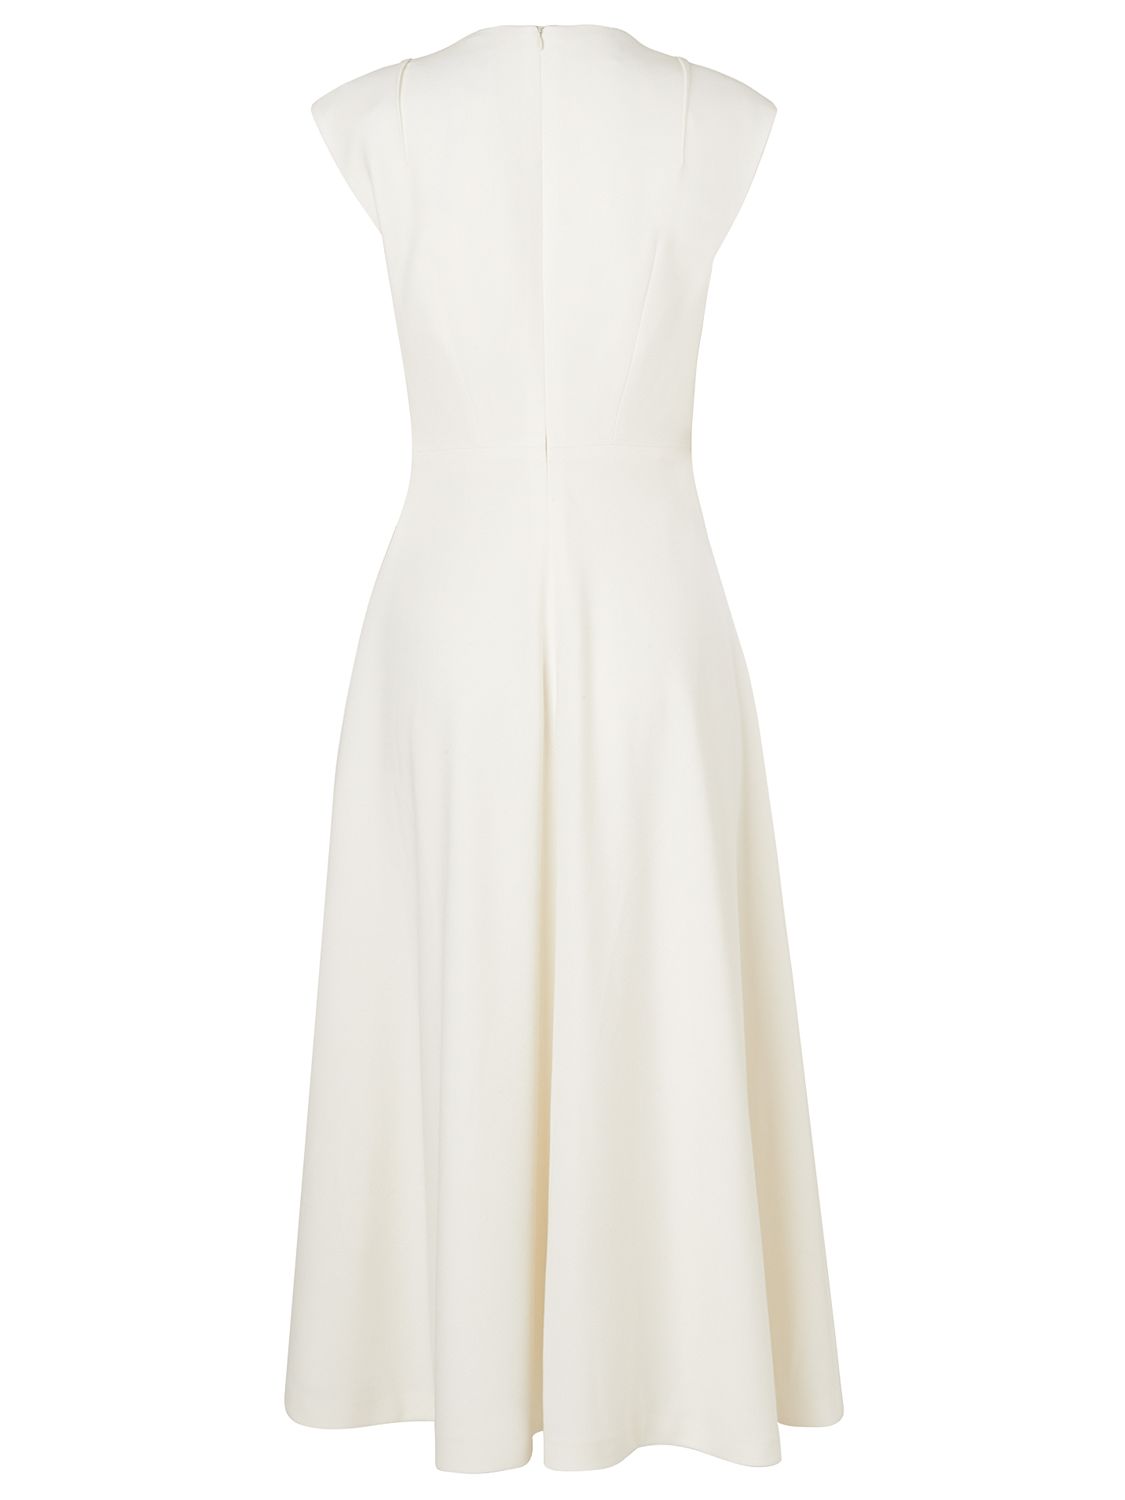 L.K. Bennett Kimmi Full Skirted Dress, Cream